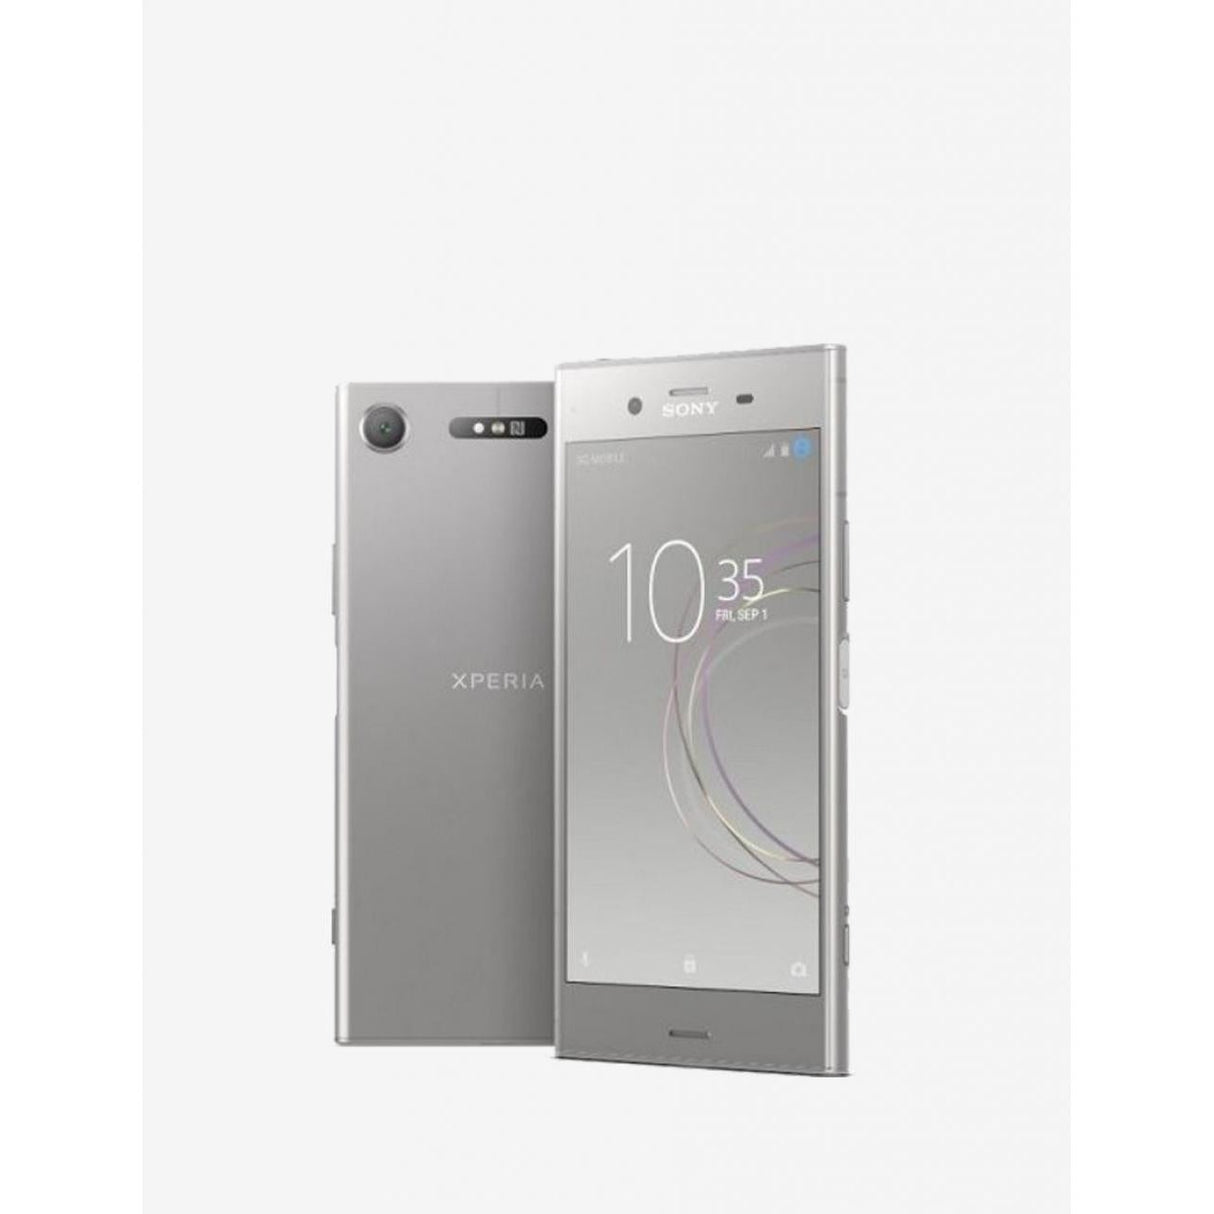 Sony Xperia XZ1 - 64 GB - Warm Silver - Unlocked - GSM